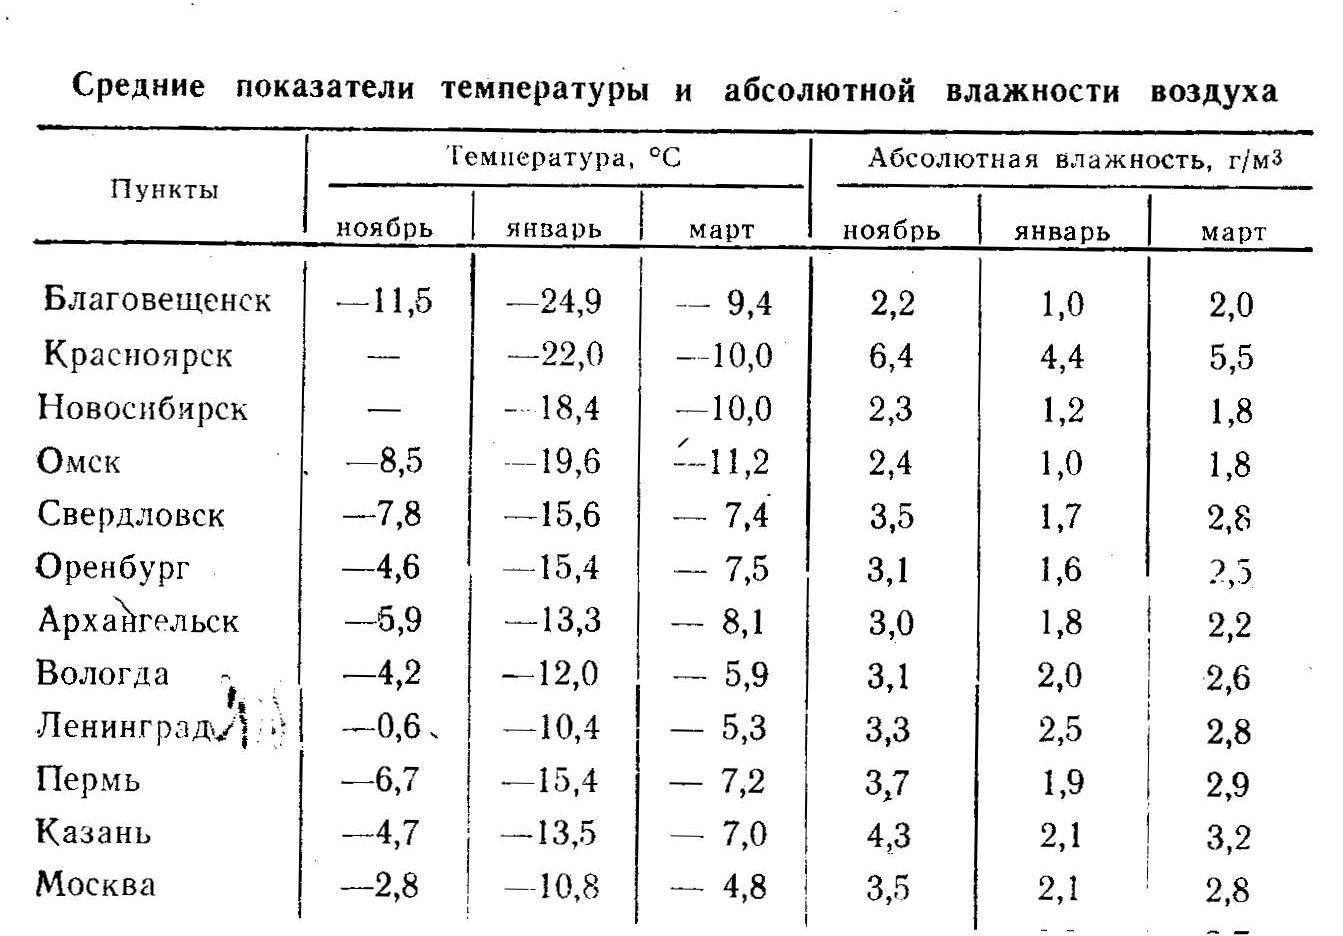 Какая влажность воздуха в перми. Показатели температуры и влажности. Таблица среднемесячных температур. Влажность воздуха в городах России таблица. Средние показатели температуры и влажности воздуха.